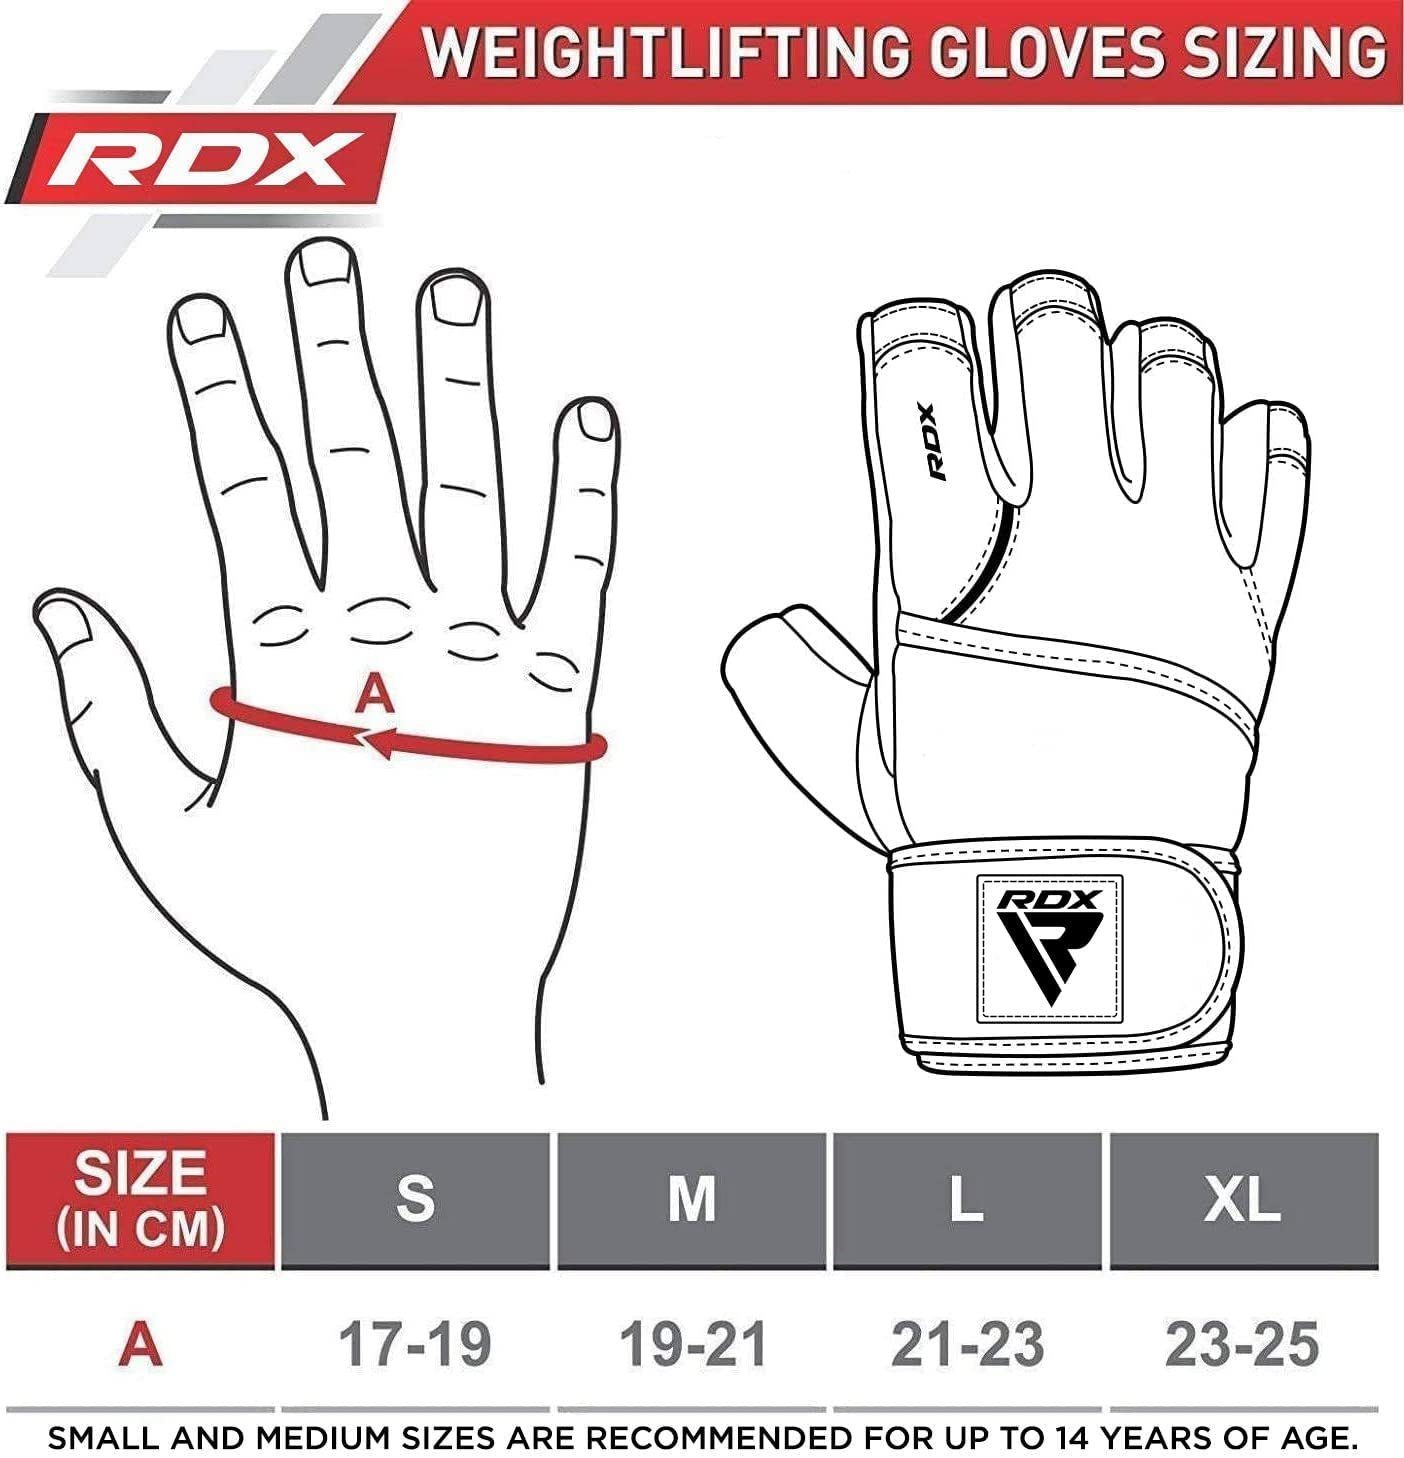 Fitness Leder Gloves Handschuhe, RDX Fitness Trainingshandschuhe Handgelenkschutz Maya RDX